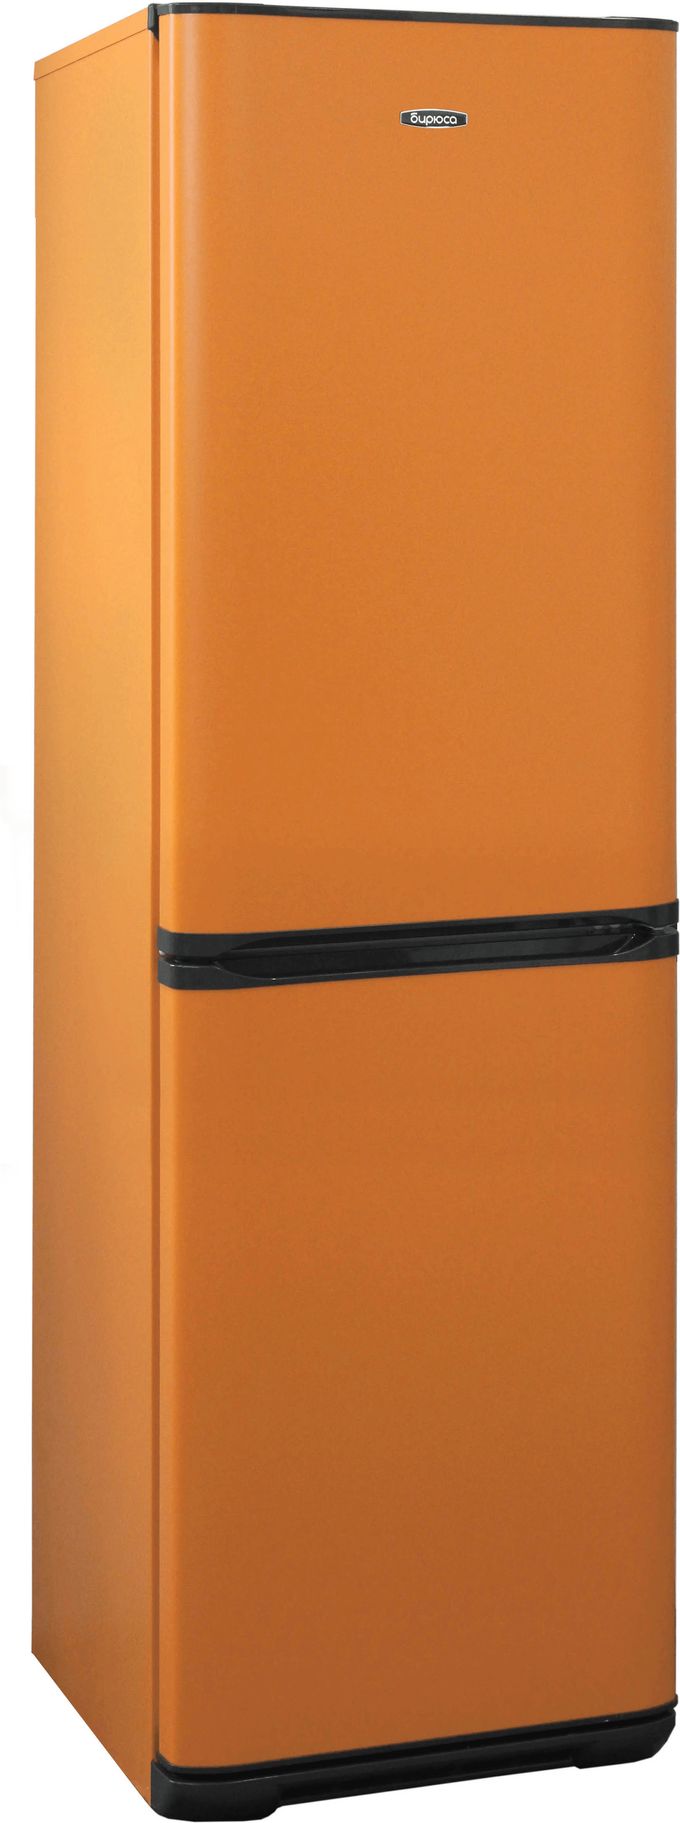 холодильник бирюса 340nf, купить в Красноярске холодильник бирюса 340nf,  купить в Красноярске дешево холодильник бирюса 340nf, купить в Красноярске минимальной цене холодильник бирюса 340nf